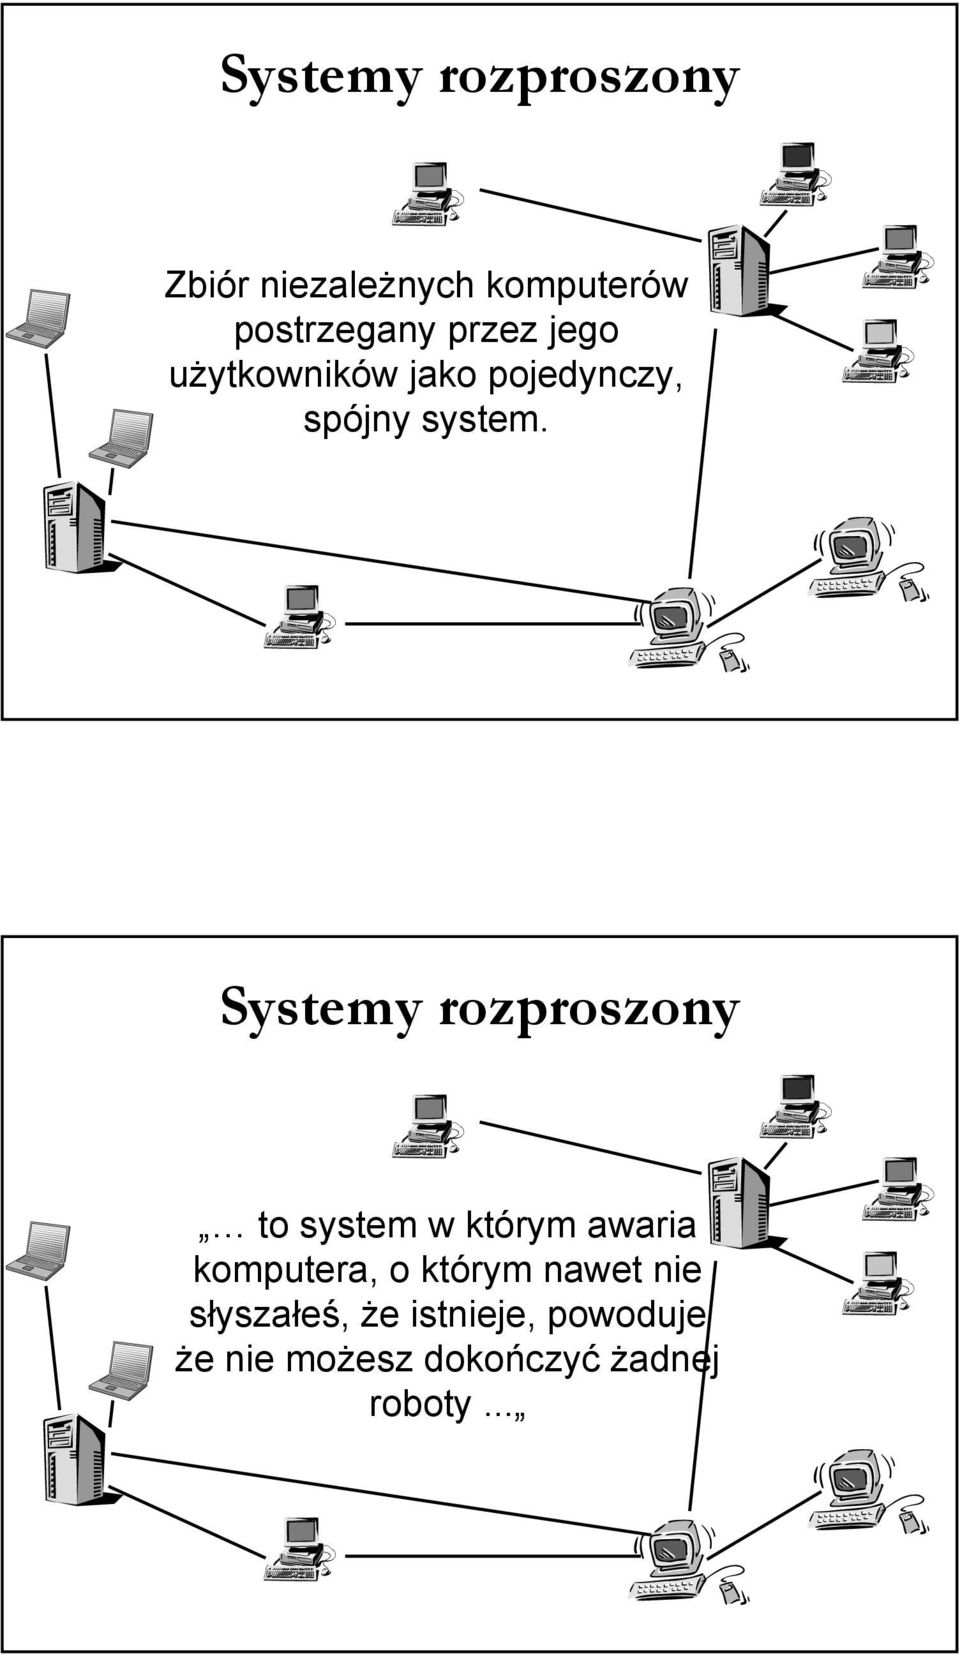 Systemy rozproszony to system w którym awaria komputera, o którym